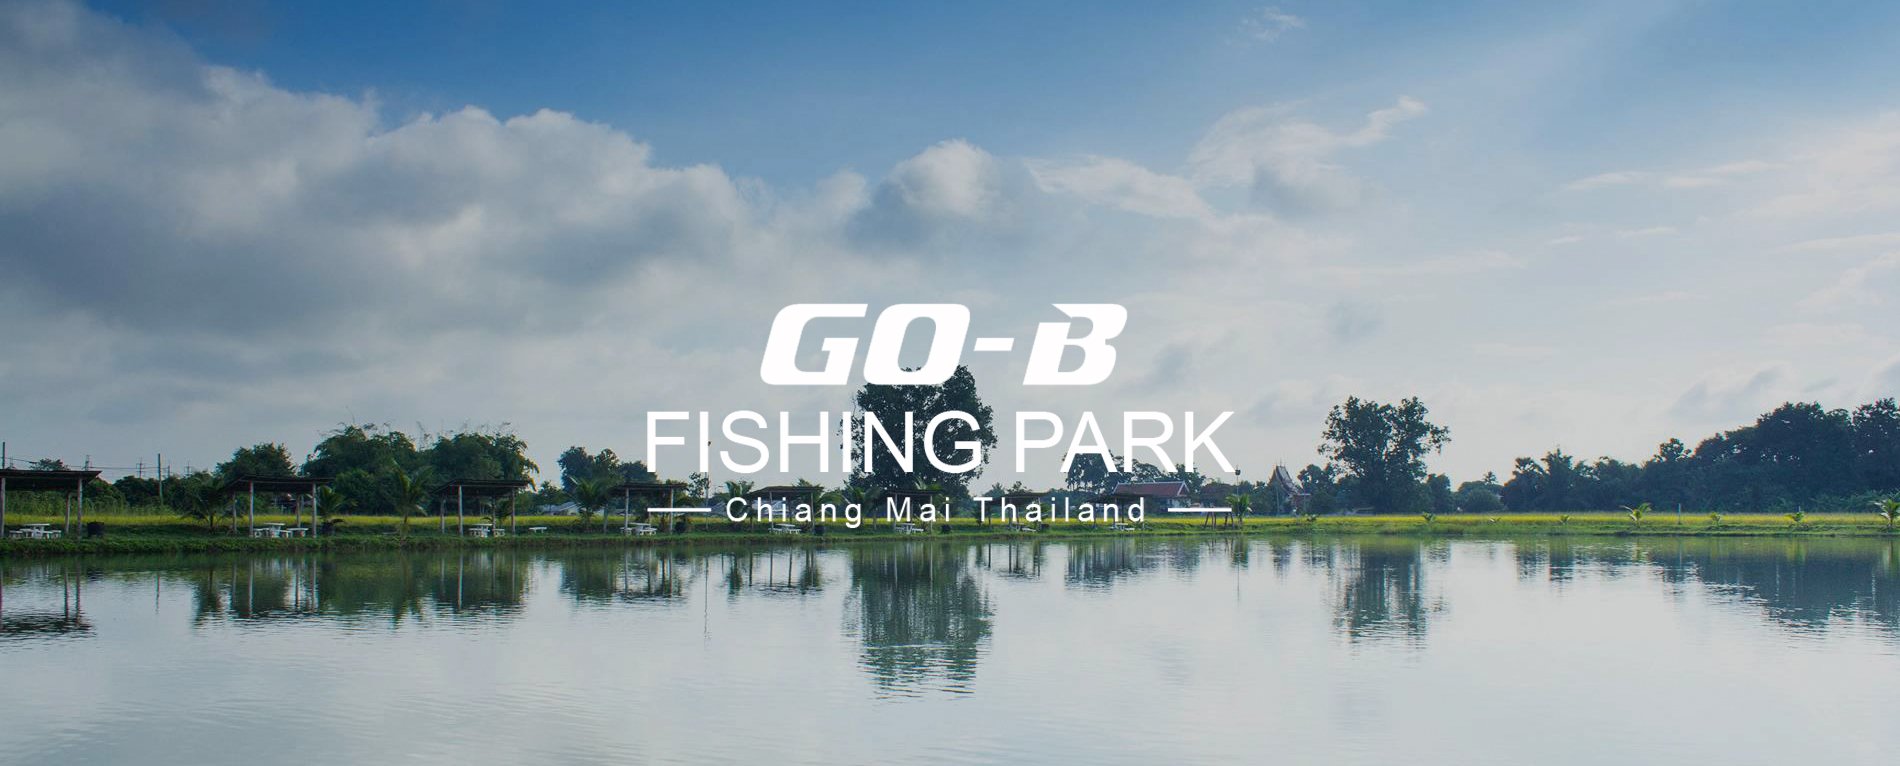 GO-B Fishing Park